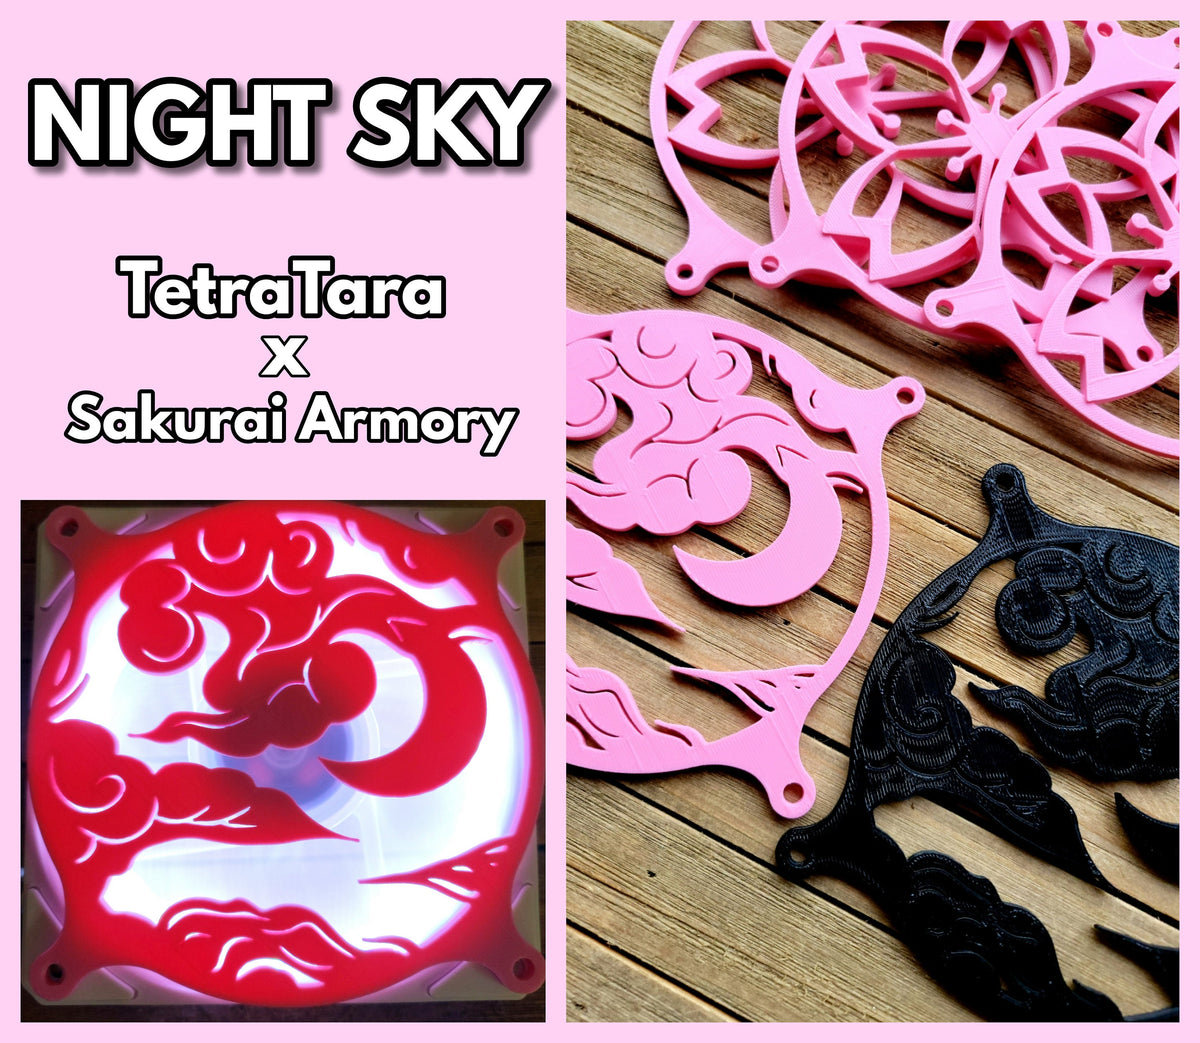 Night Sky - TetraTara x Sakurai Armory